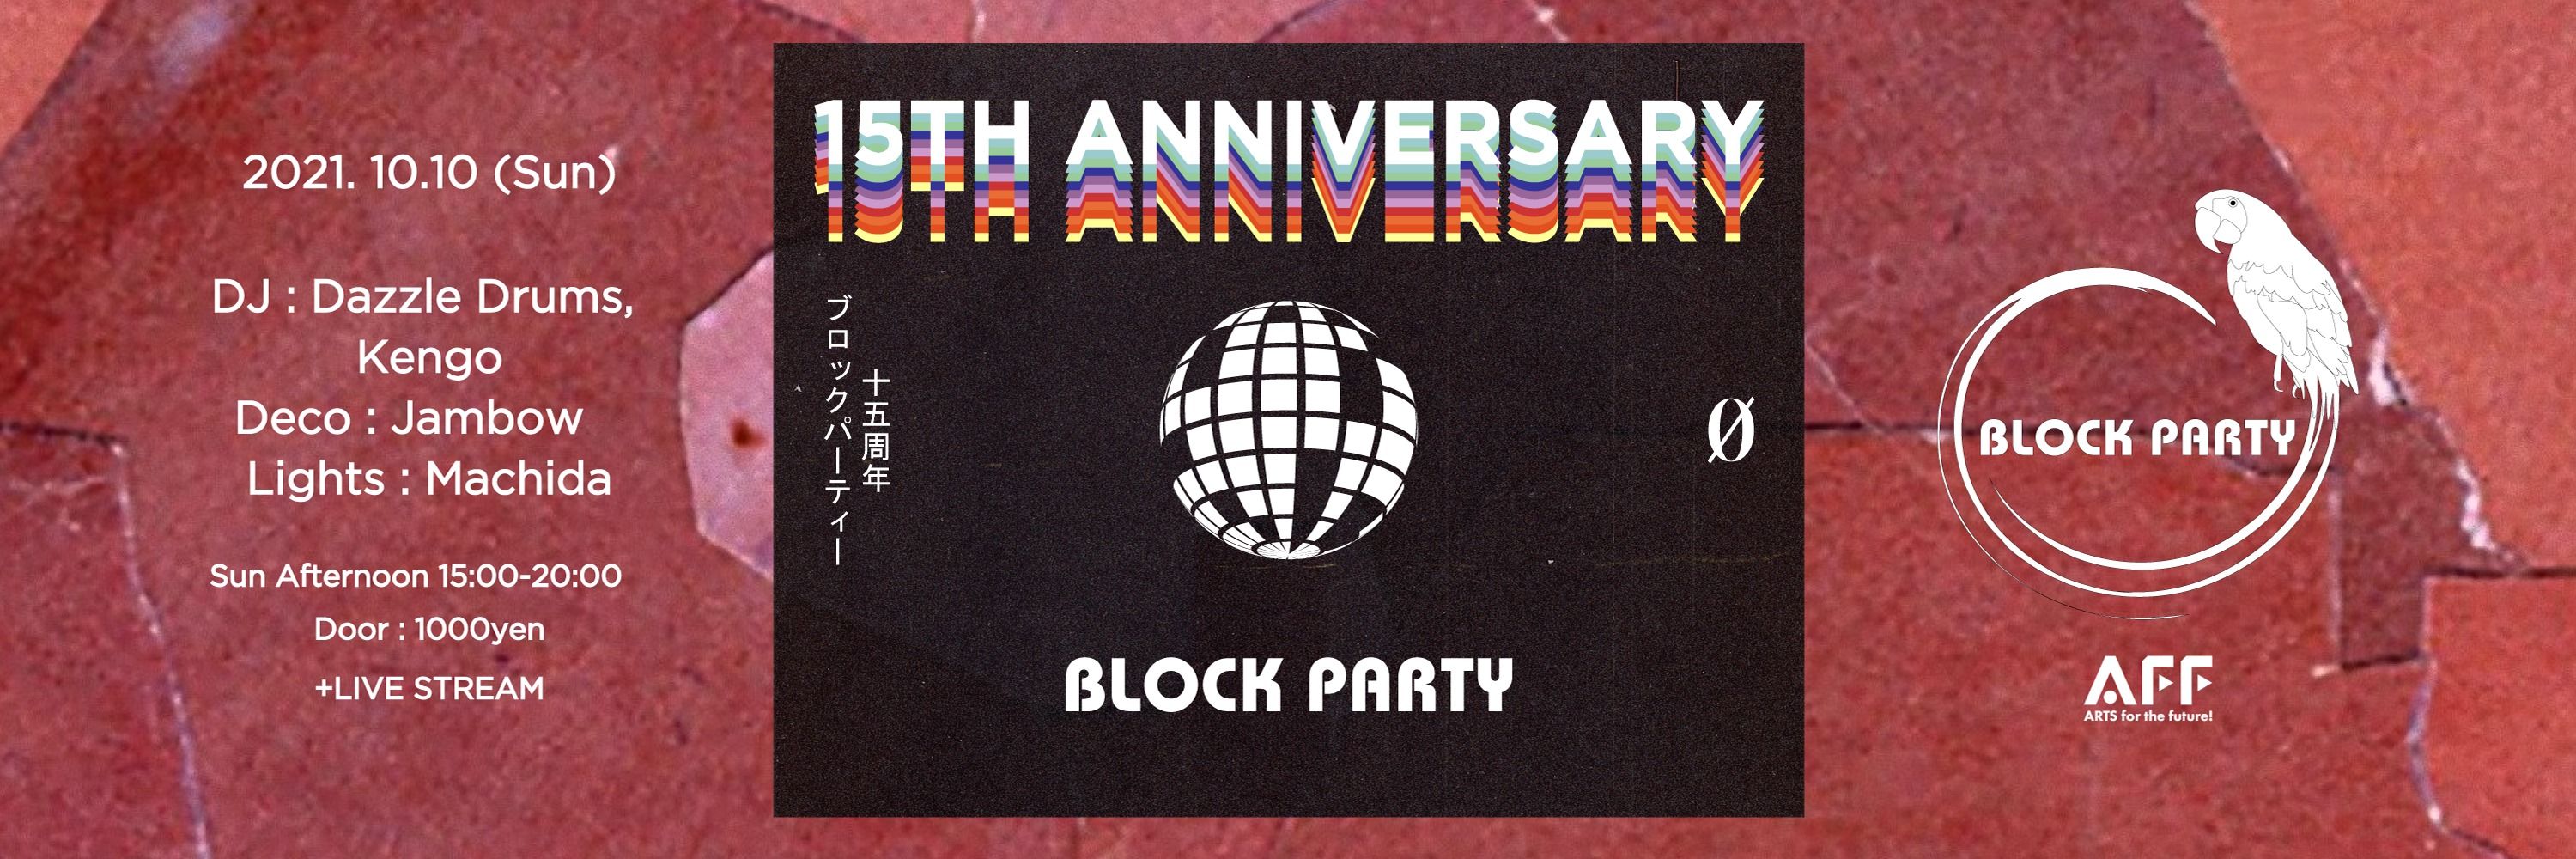 Live Stream - Block Party "15th Anniversary"  @ 0 Zero